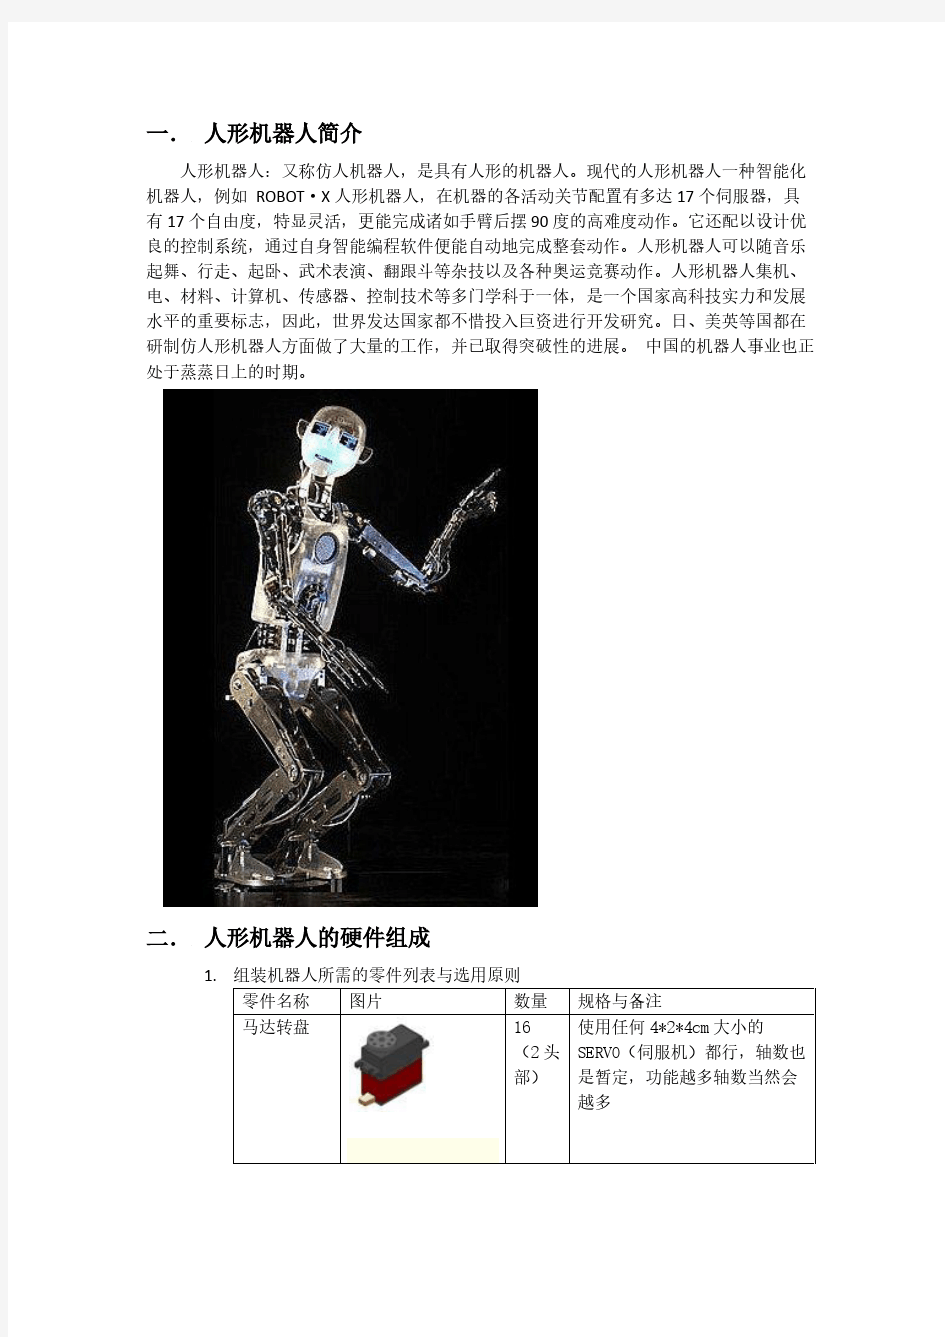 人形机器人设计与制作实验报告